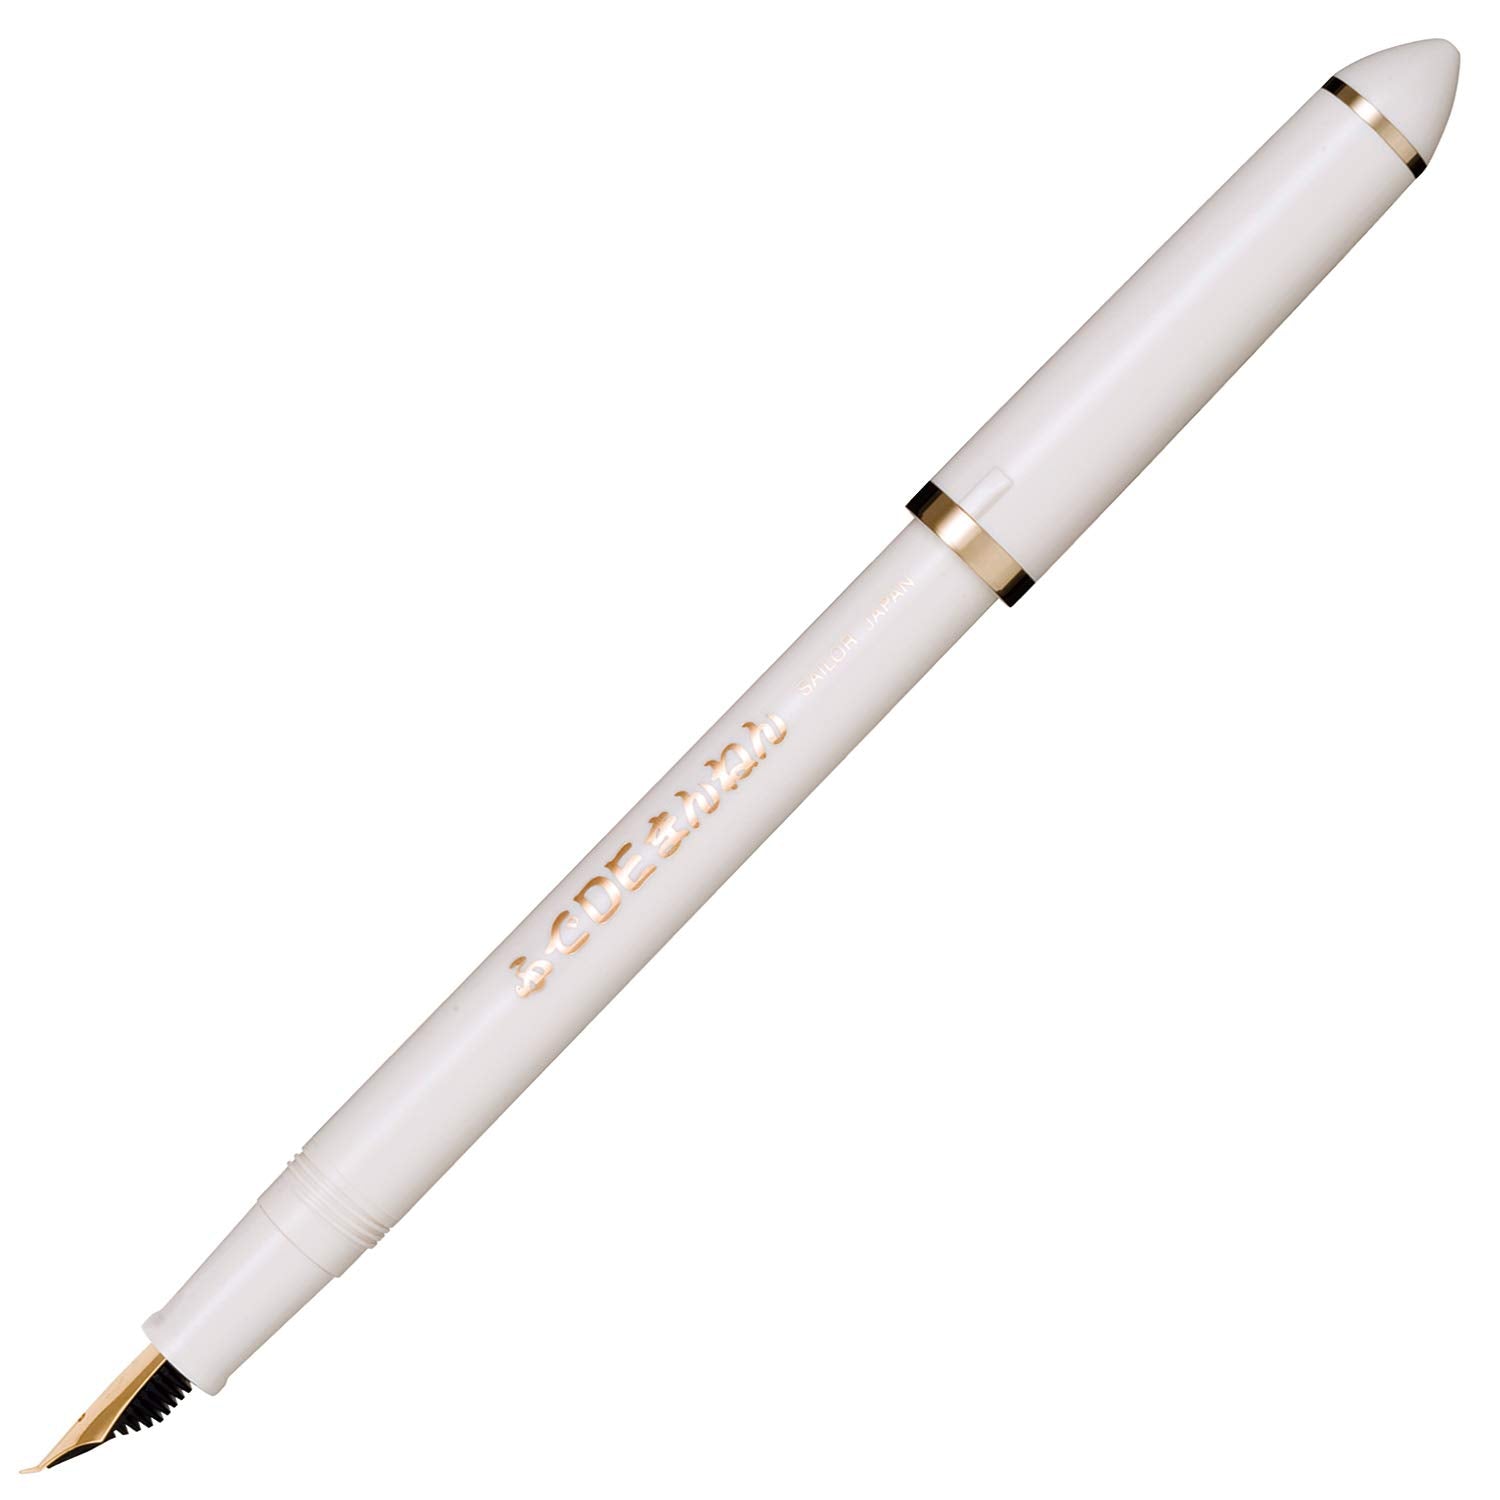 Sailor Fude De Mannen Caliigraphy Fountain Pen (40 degrees w/ 2pcs. cartridges)